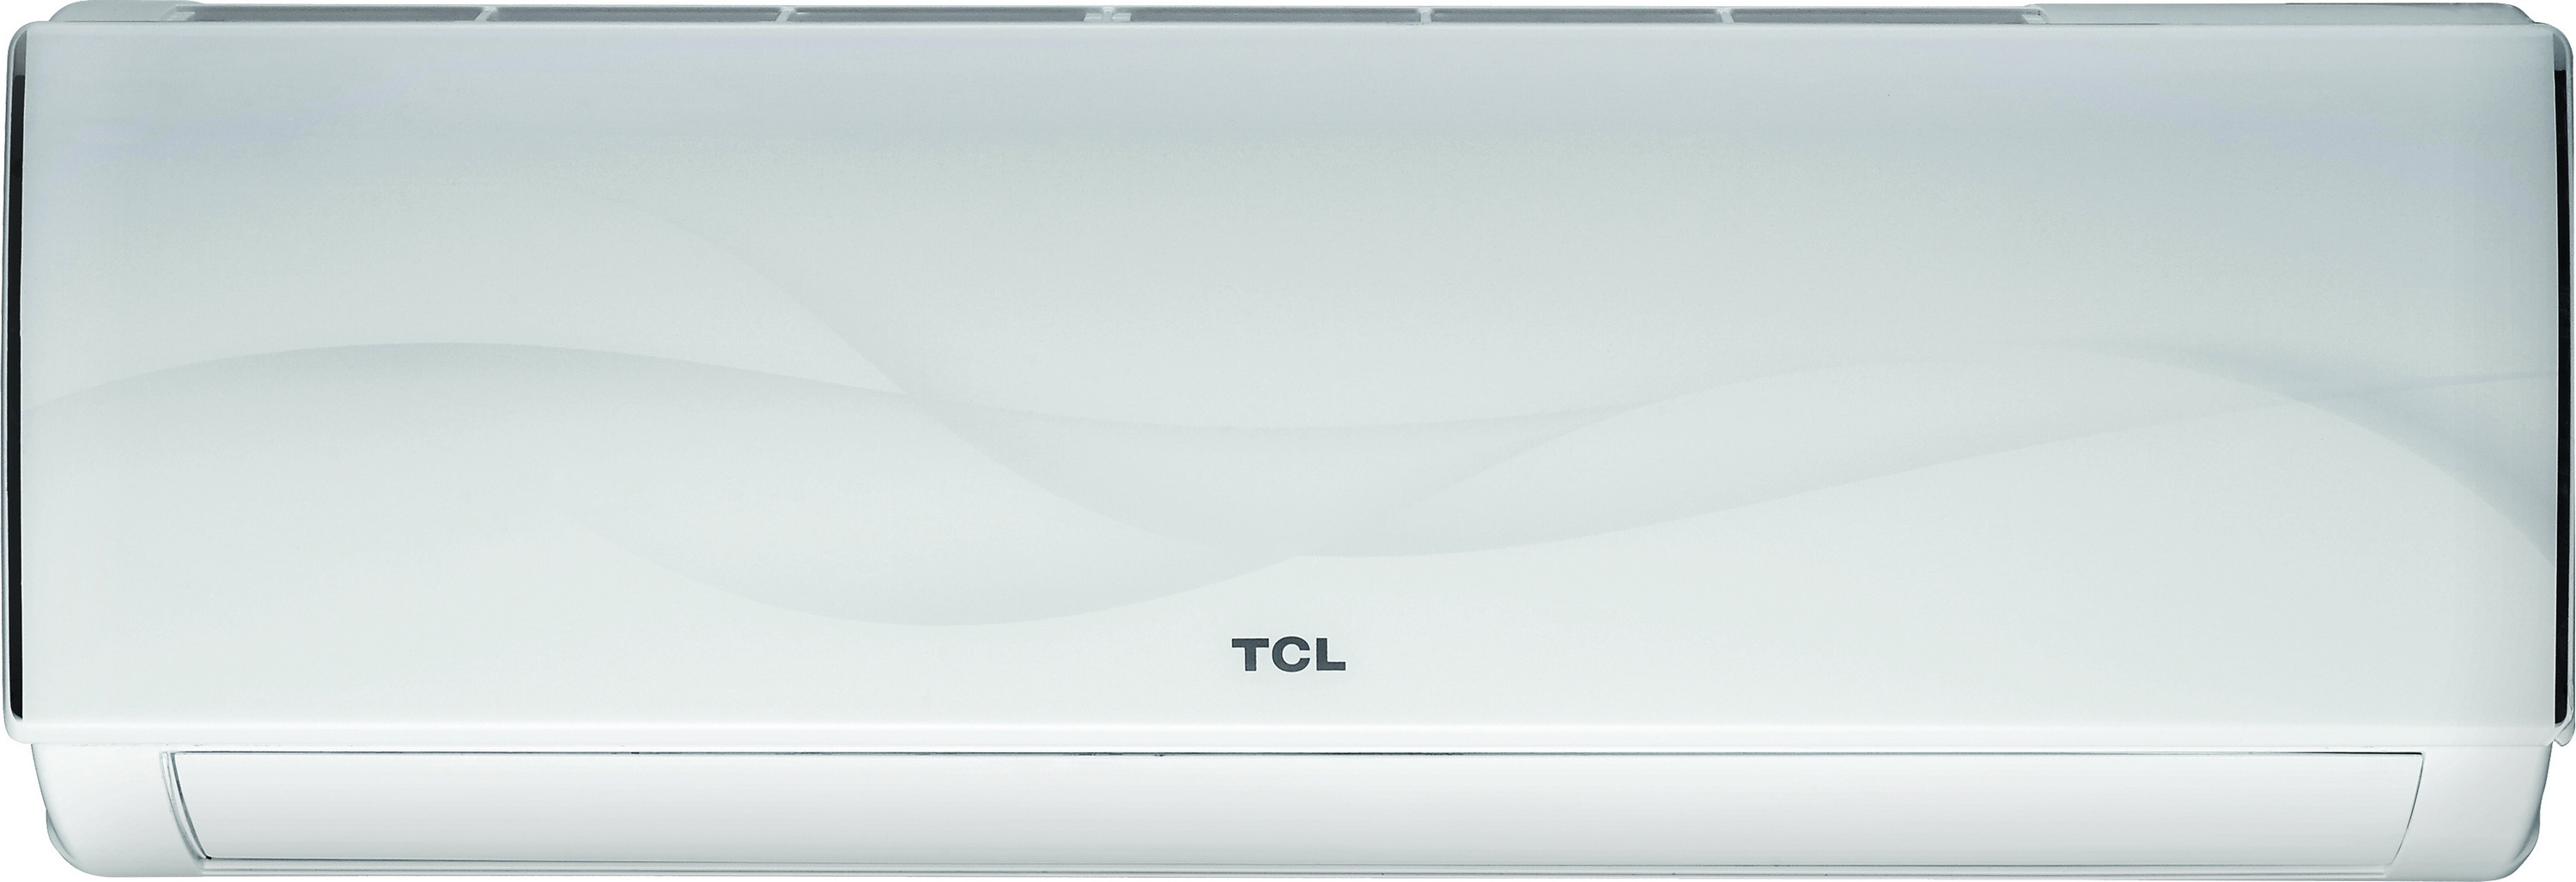 Внутренний блок мультисплит-системы TCL Elite XA31 12000 BTU Inverter в интернет-магазине, главное фото